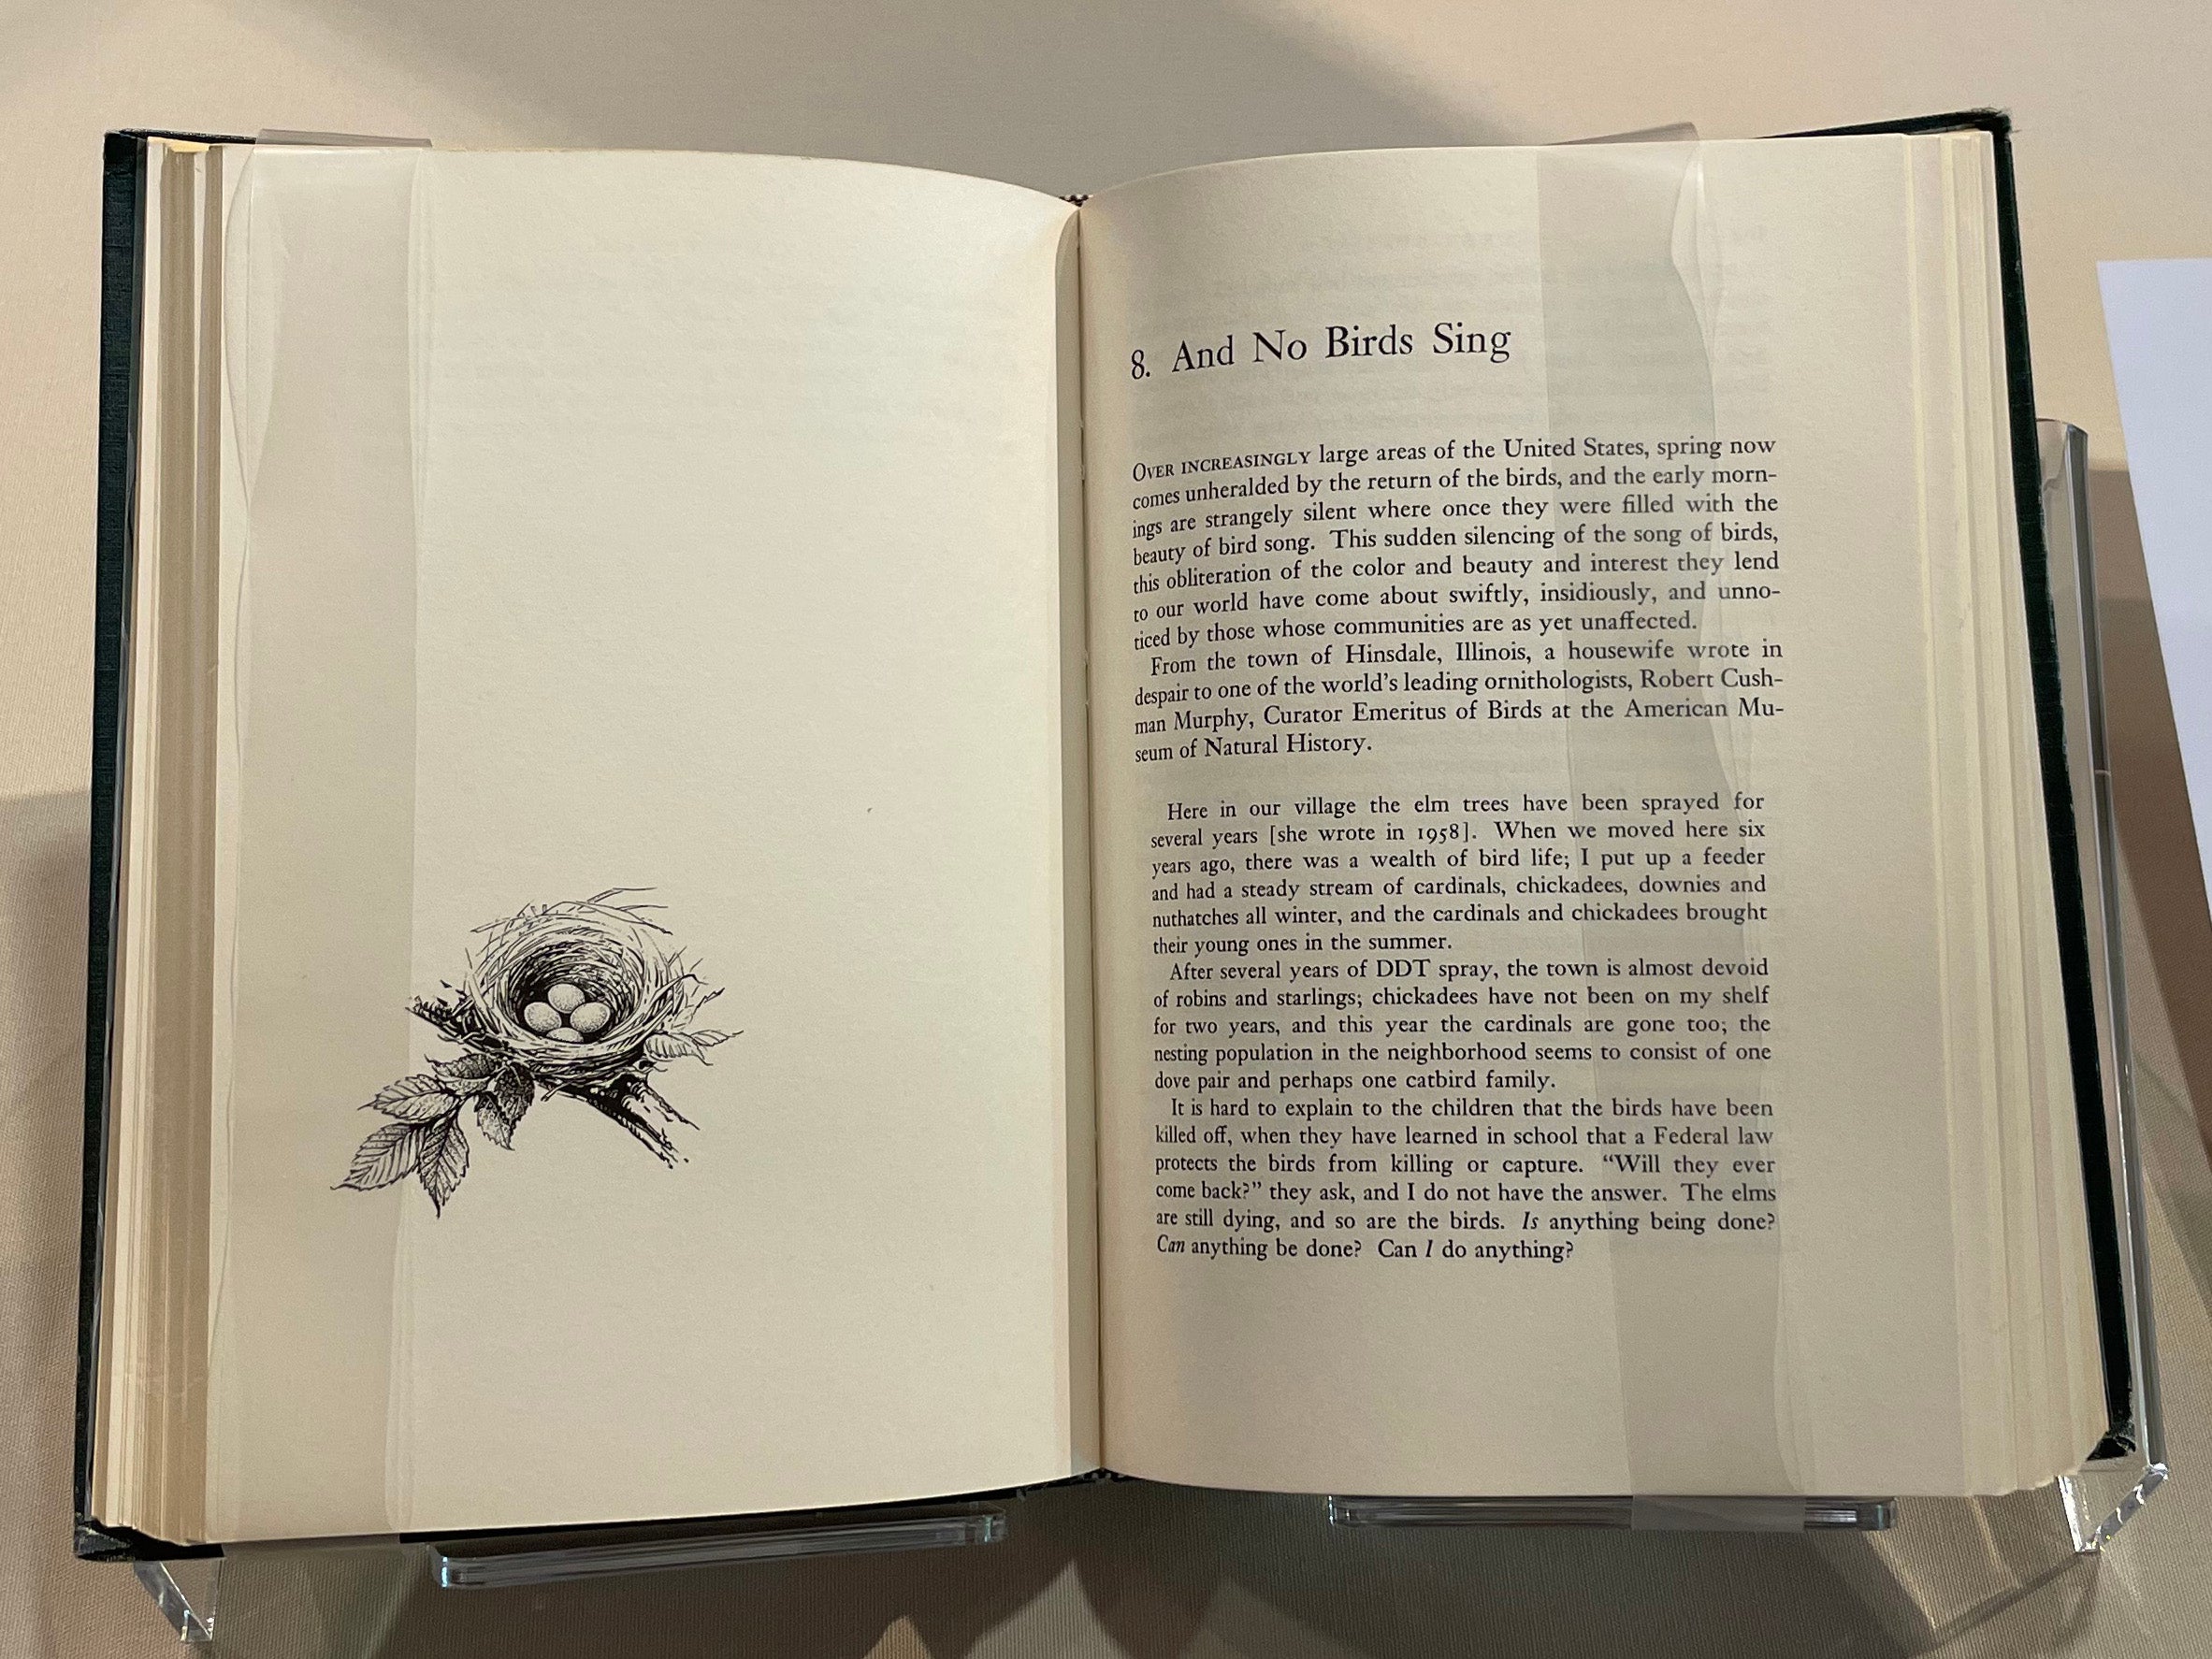 Photo of book by Rachel Carson, Silent Spring. Cambridge MA, 1962.